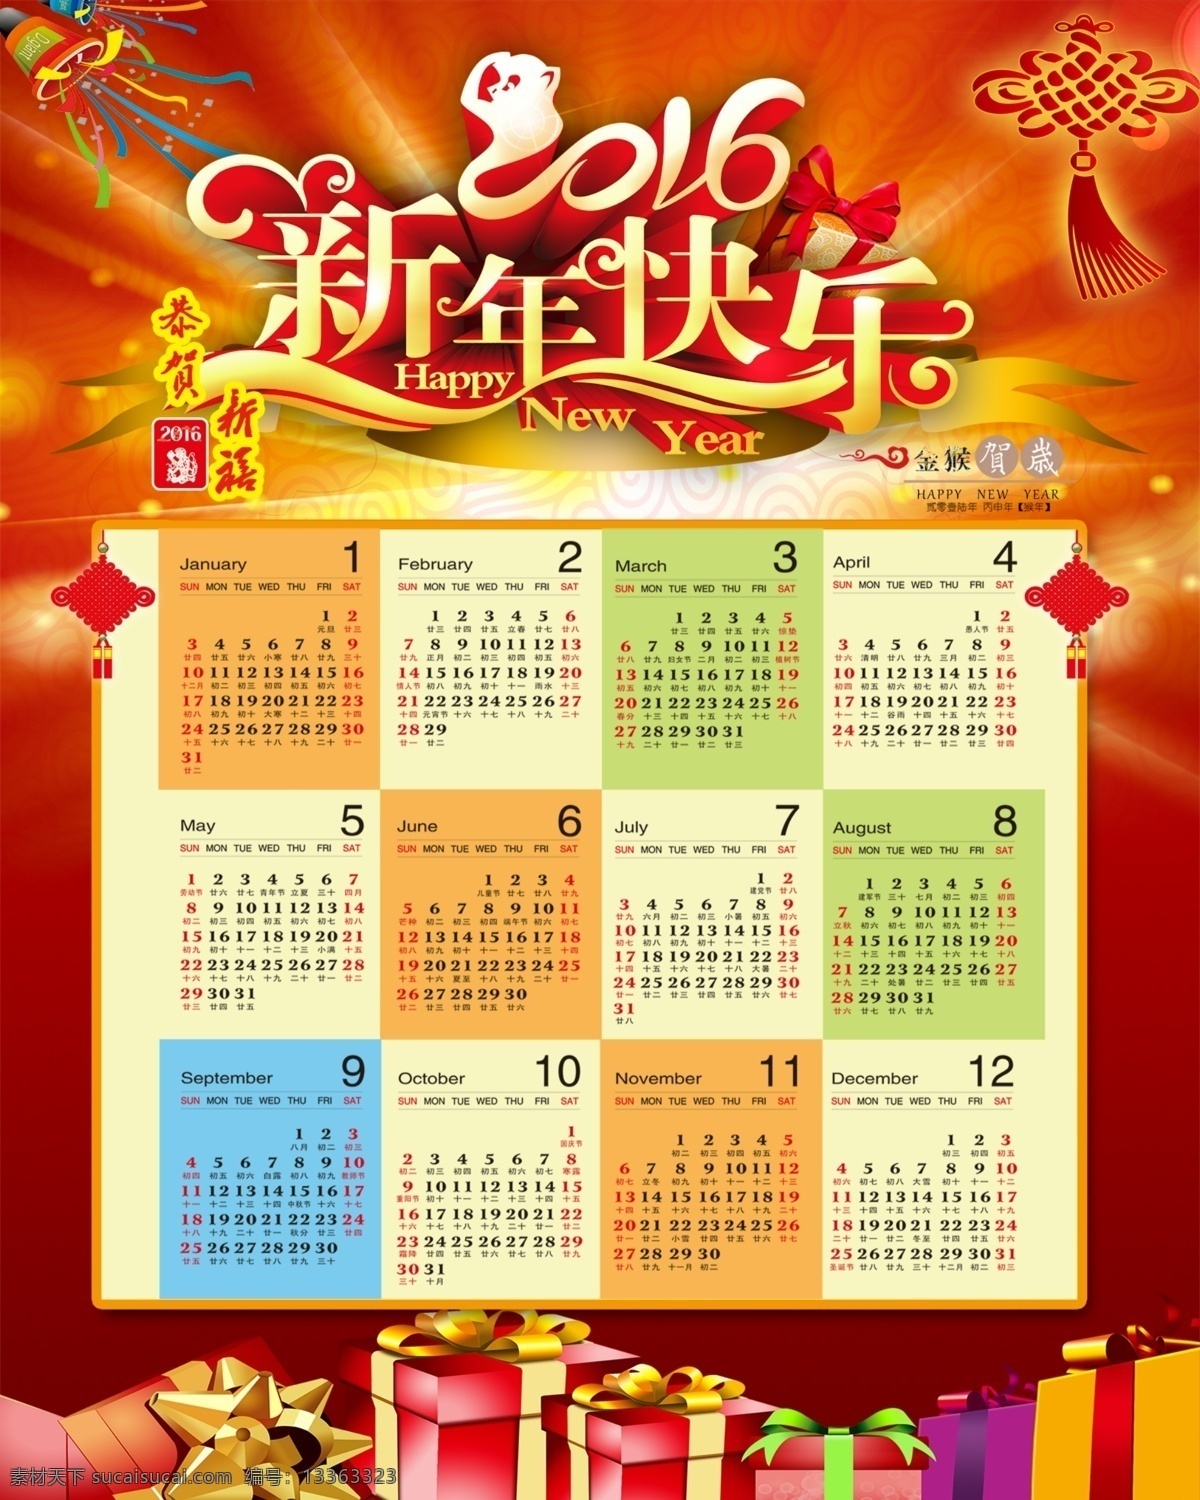 2016 年 年历 日历 猴年日历 新年快乐 中国结 礼物盒 红色背景